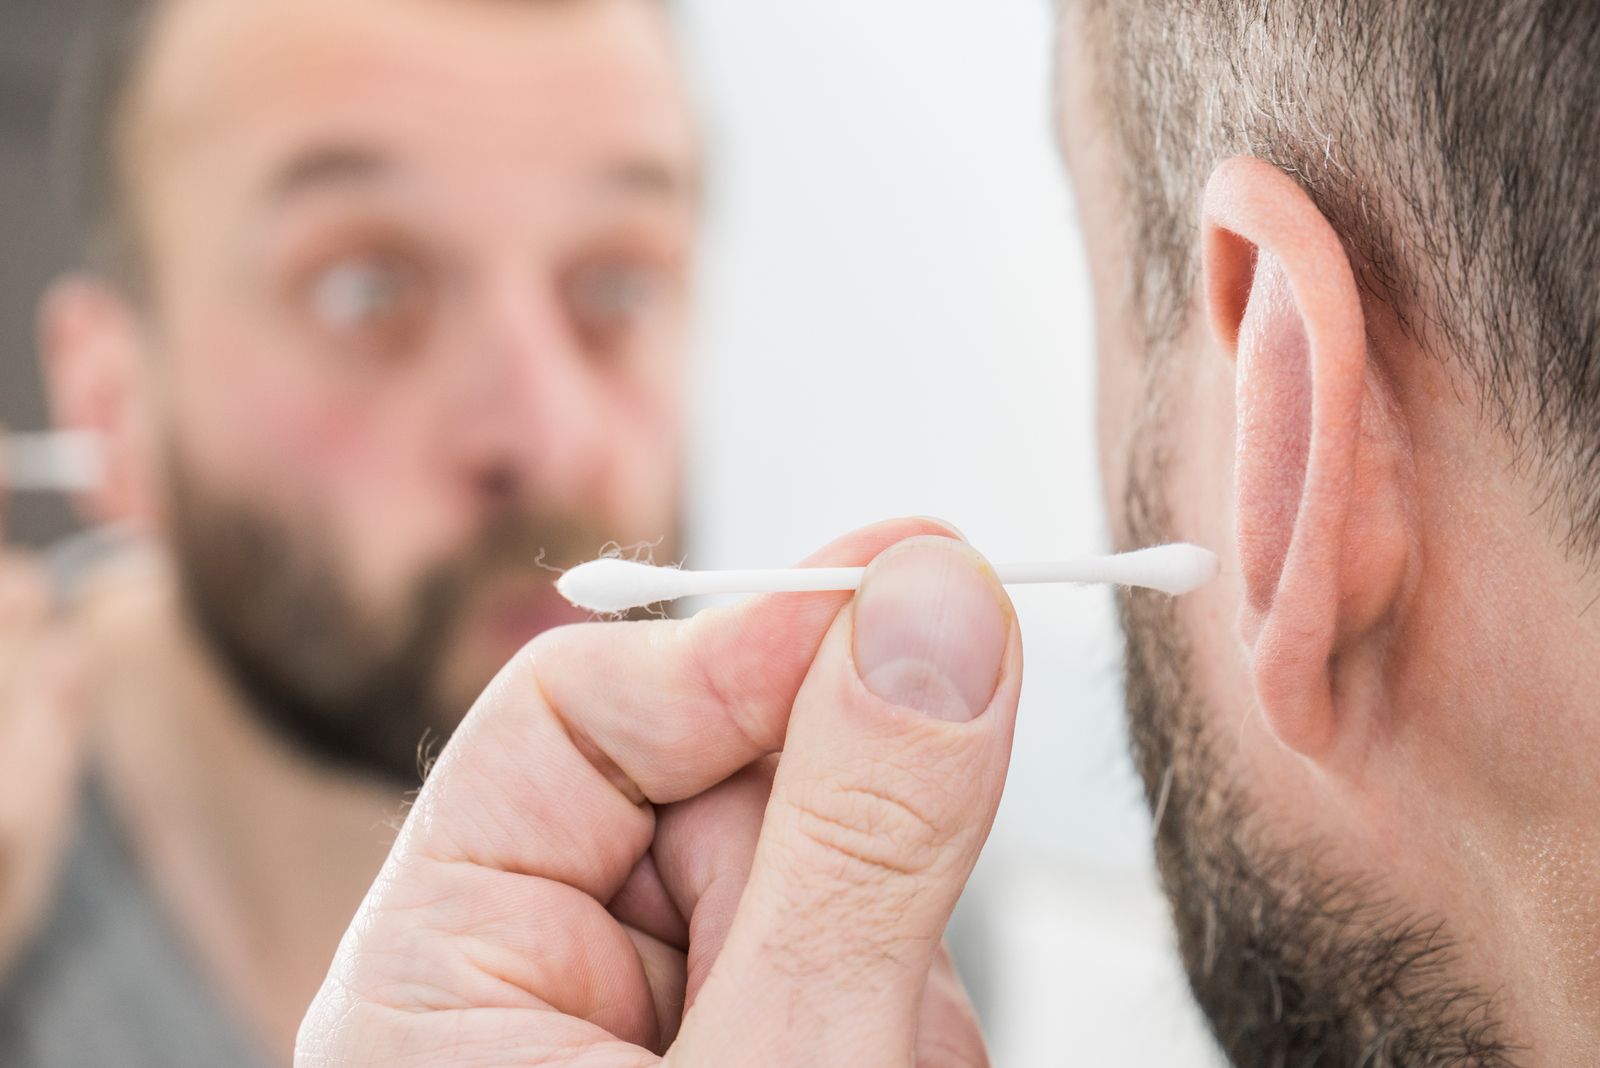 El riesgo para la salud de quitar la cera del oído